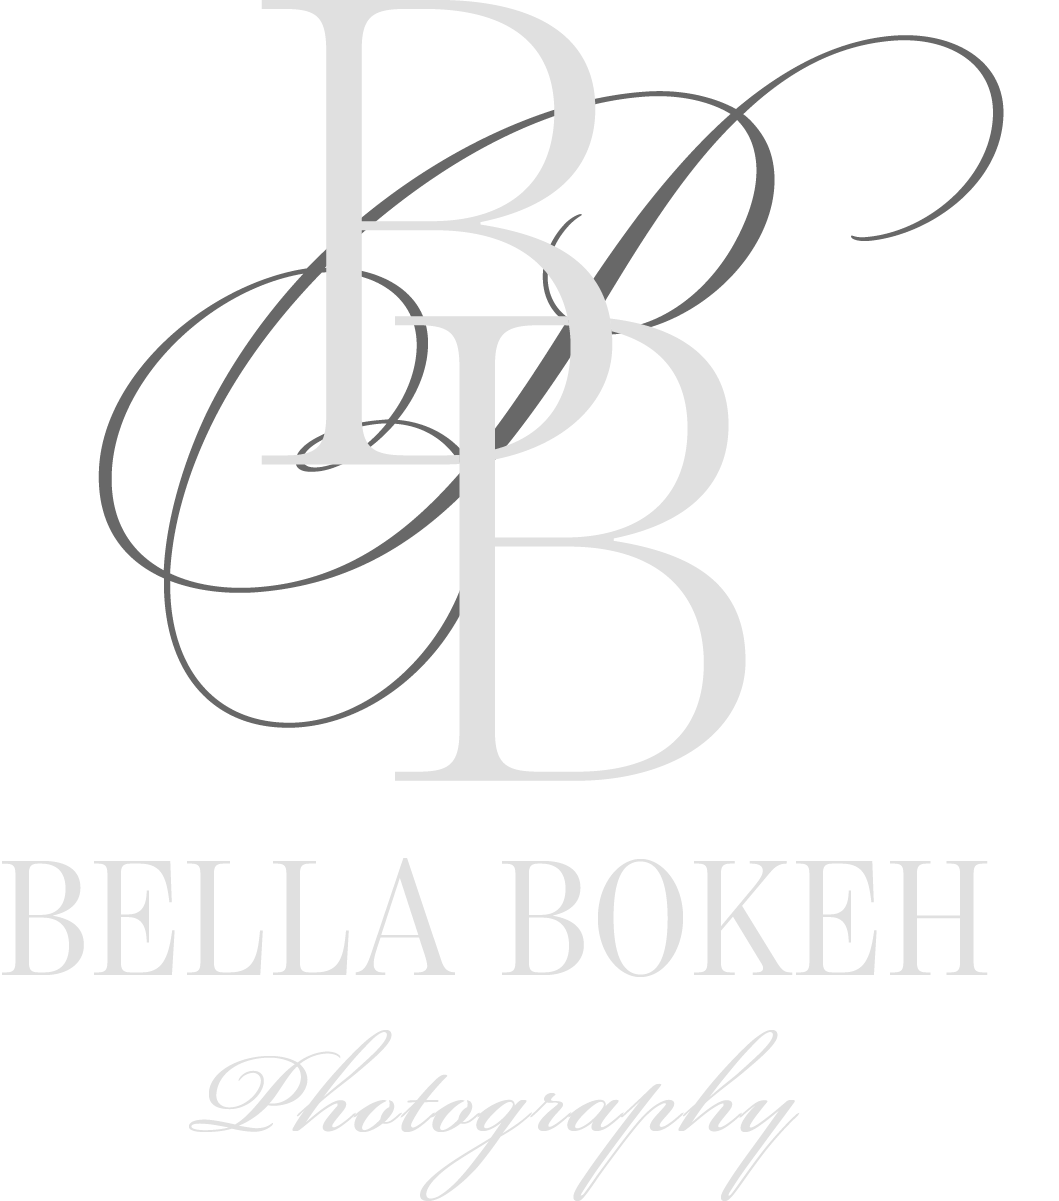 Bella Bokeh Photography